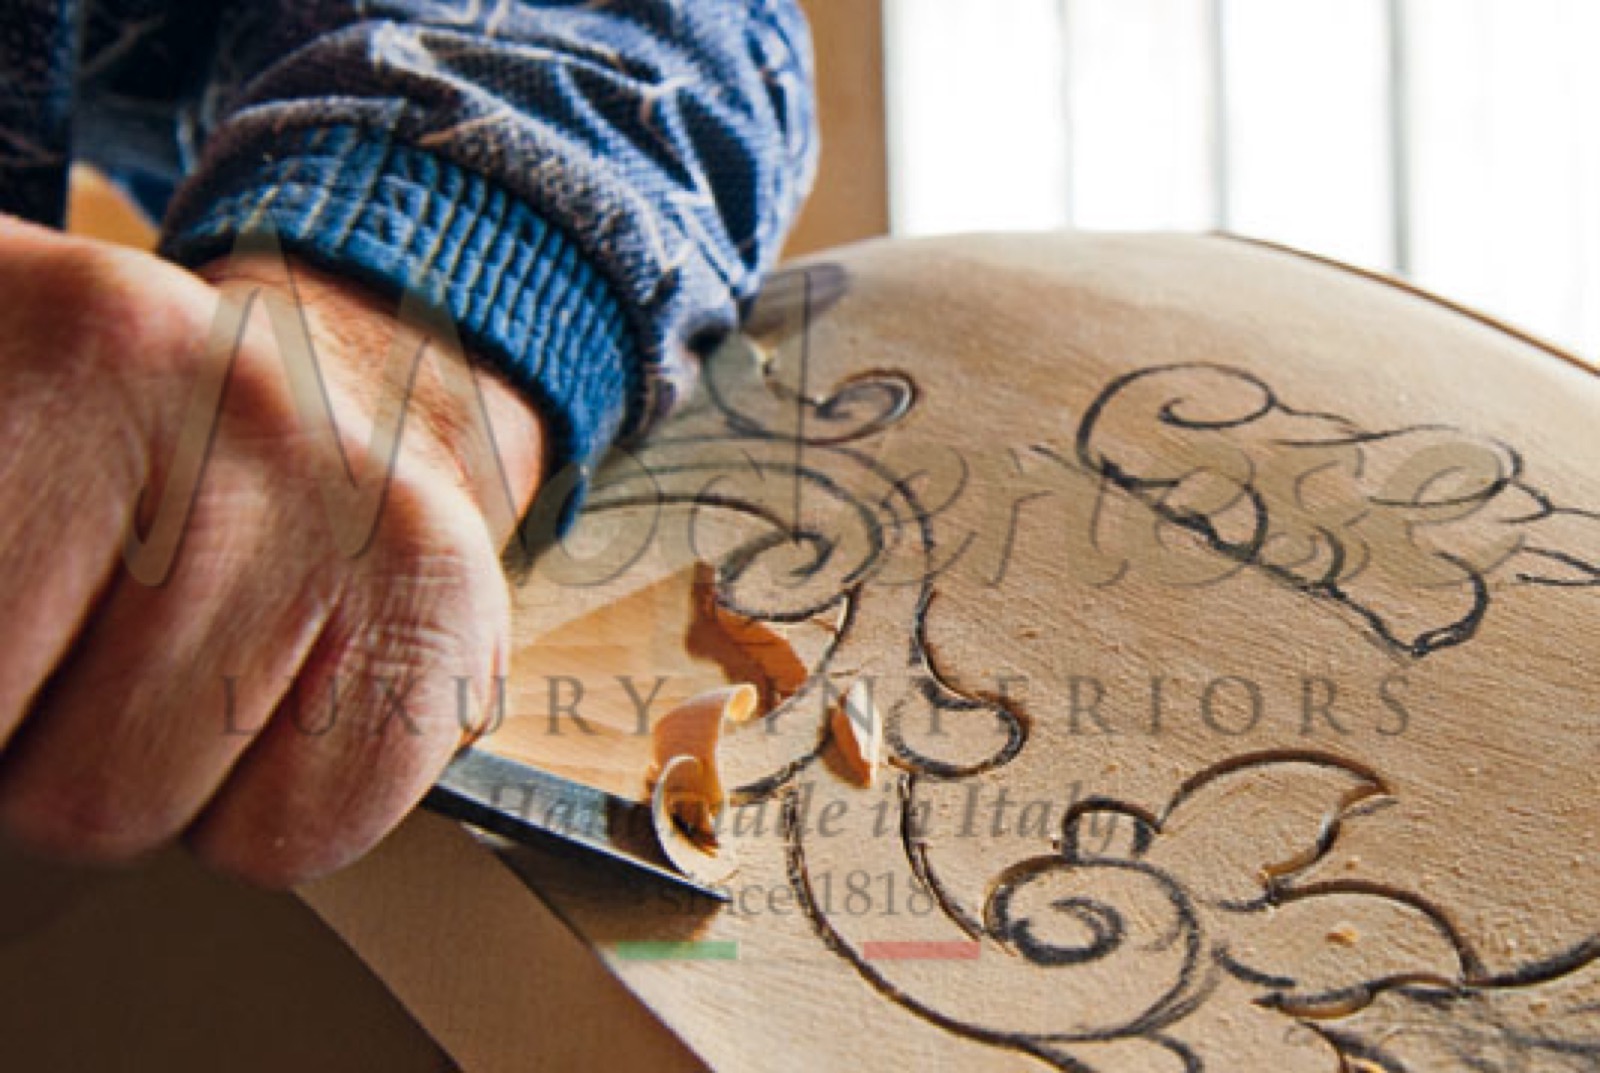 vytříbený styl baroko klasický luxusní nábytek ruční výroba projekty interiérového designu řezby z masivního dřeva dřevěná ruční výroba umělecká díla na míru vyrobená v Itálii ruční výroba design jedinečné benátské vyřezávané interiéry